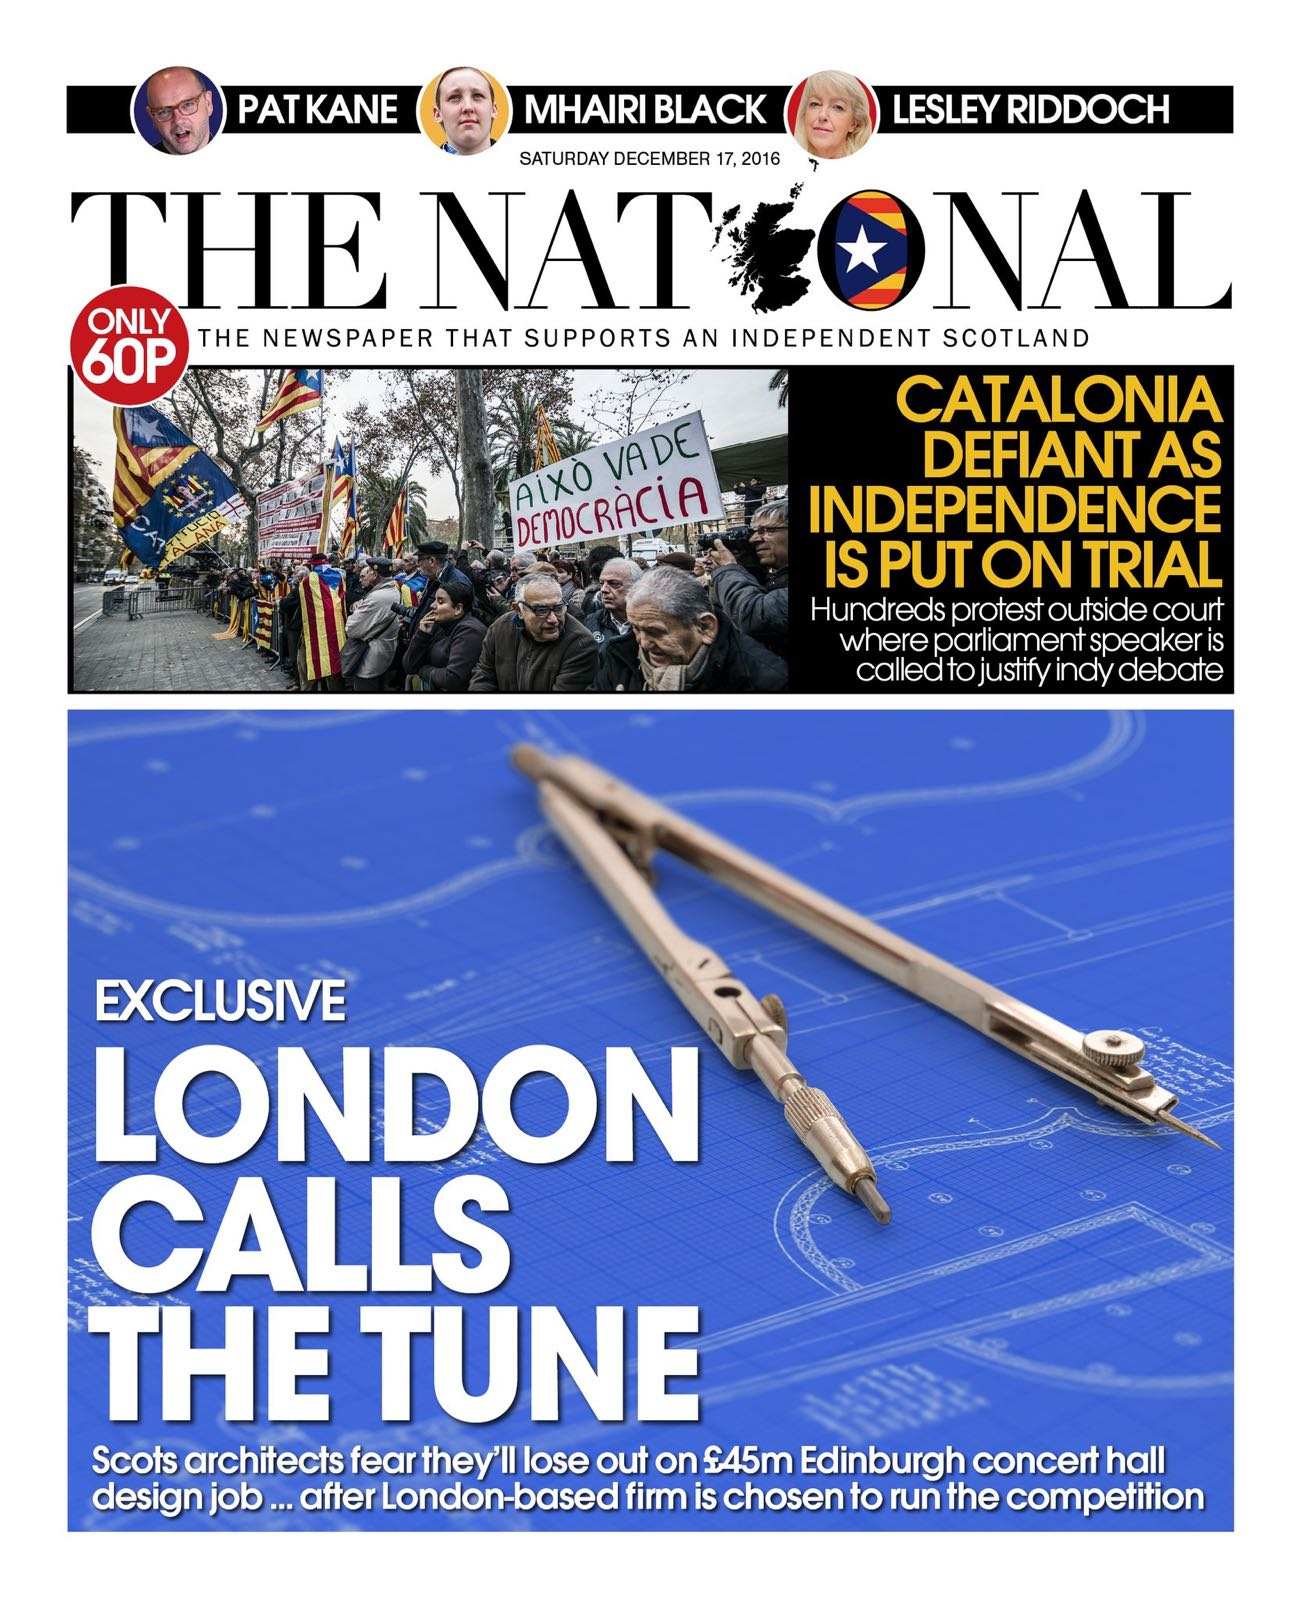 L'espectacular portada del diari escocès 'The National'